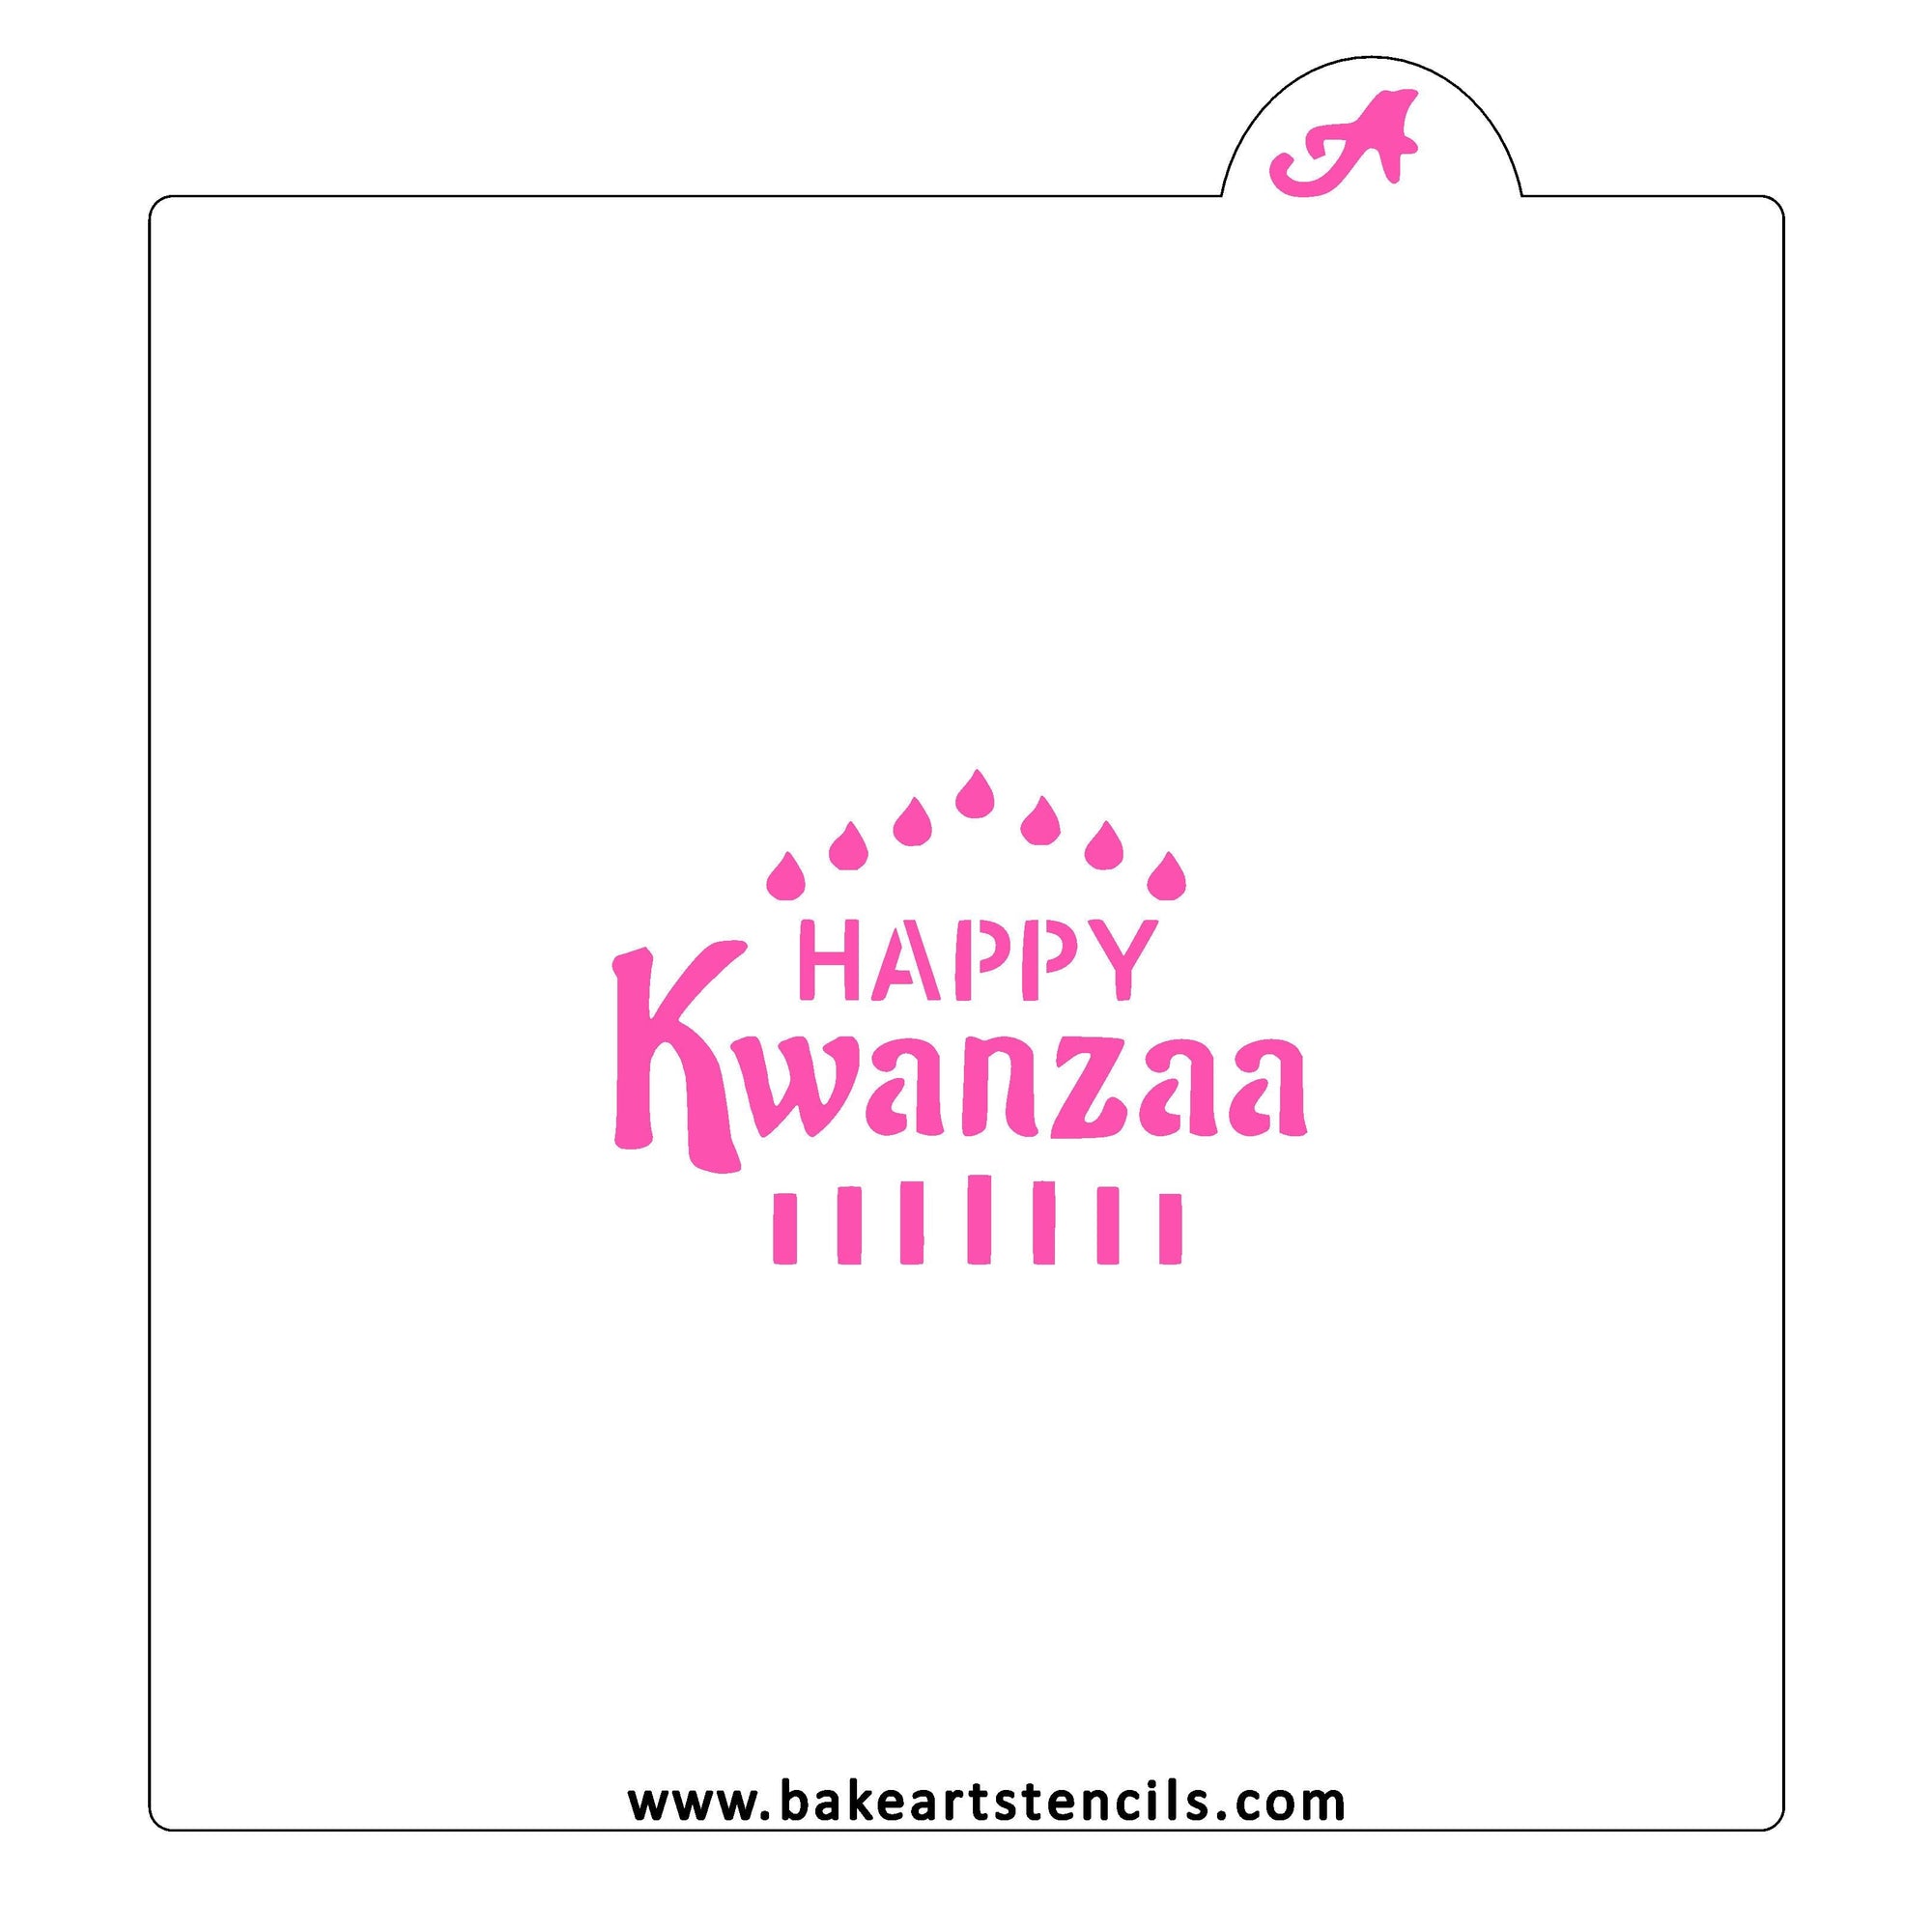 Happy Kwanzaa Cookie Stencil bakeartstencil